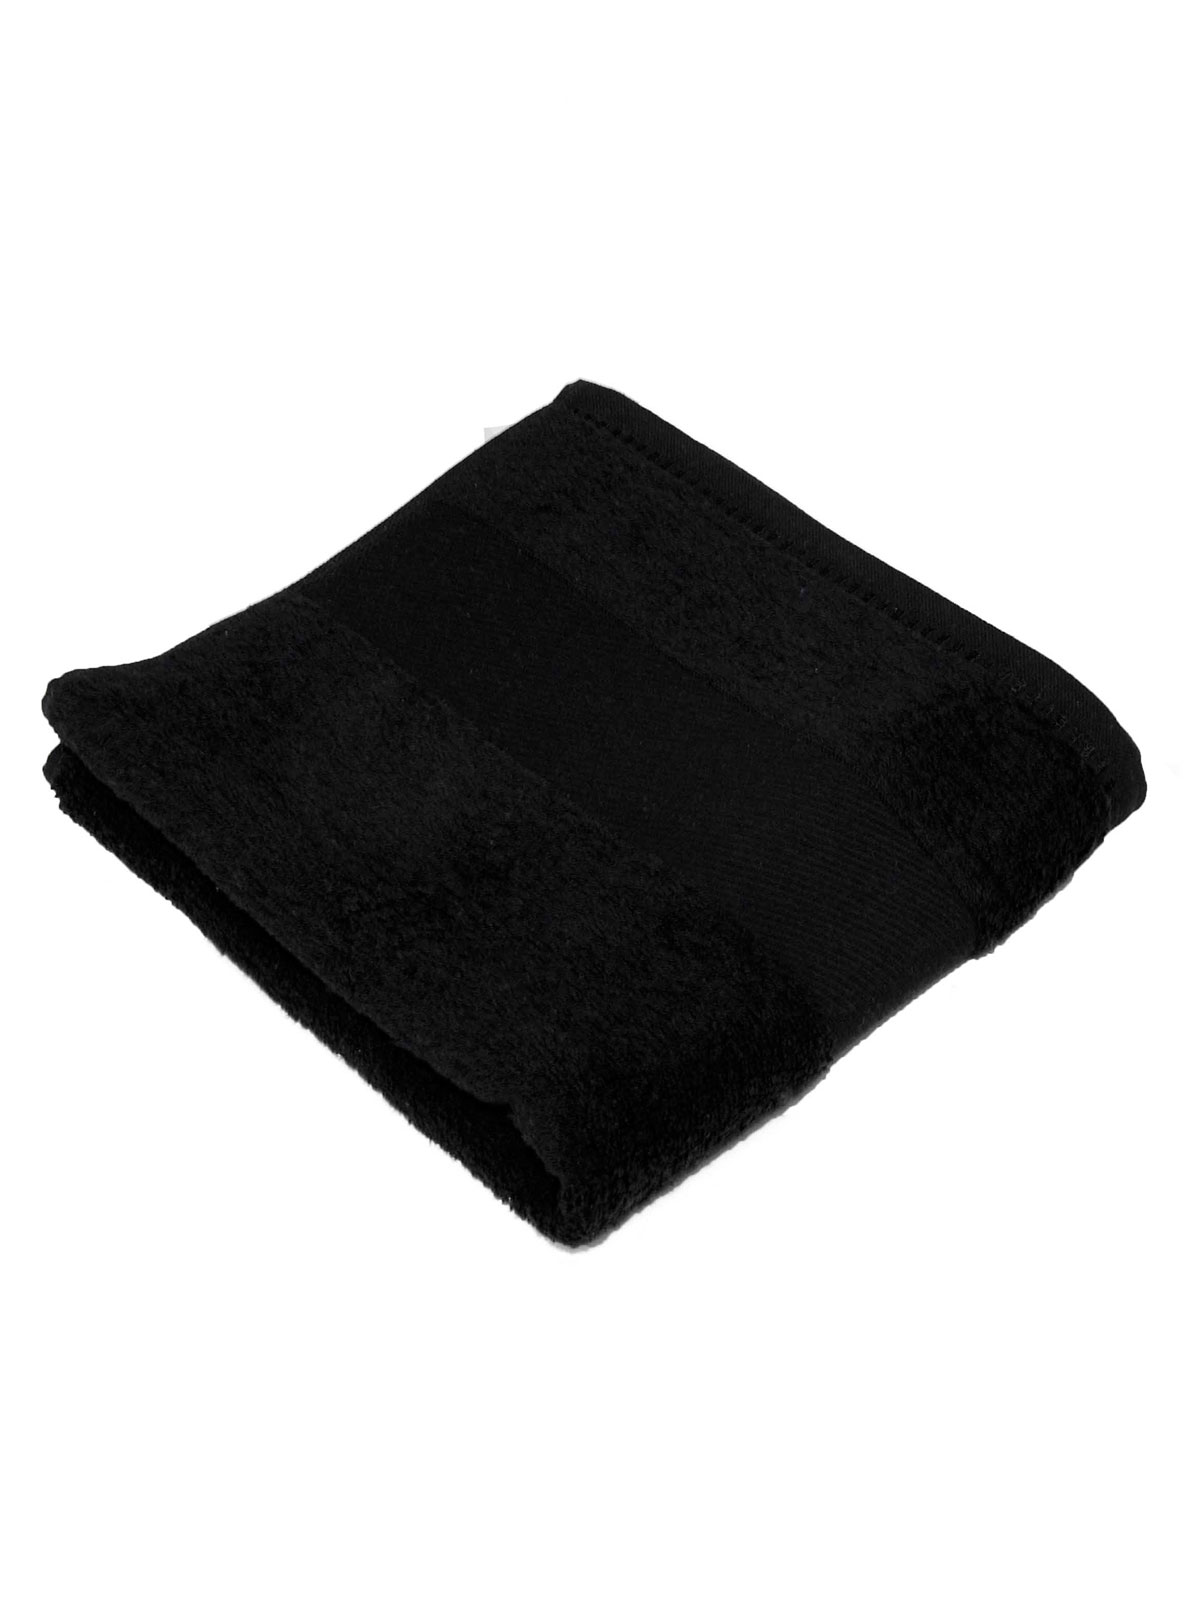 classic-towel-30x50-black.webp